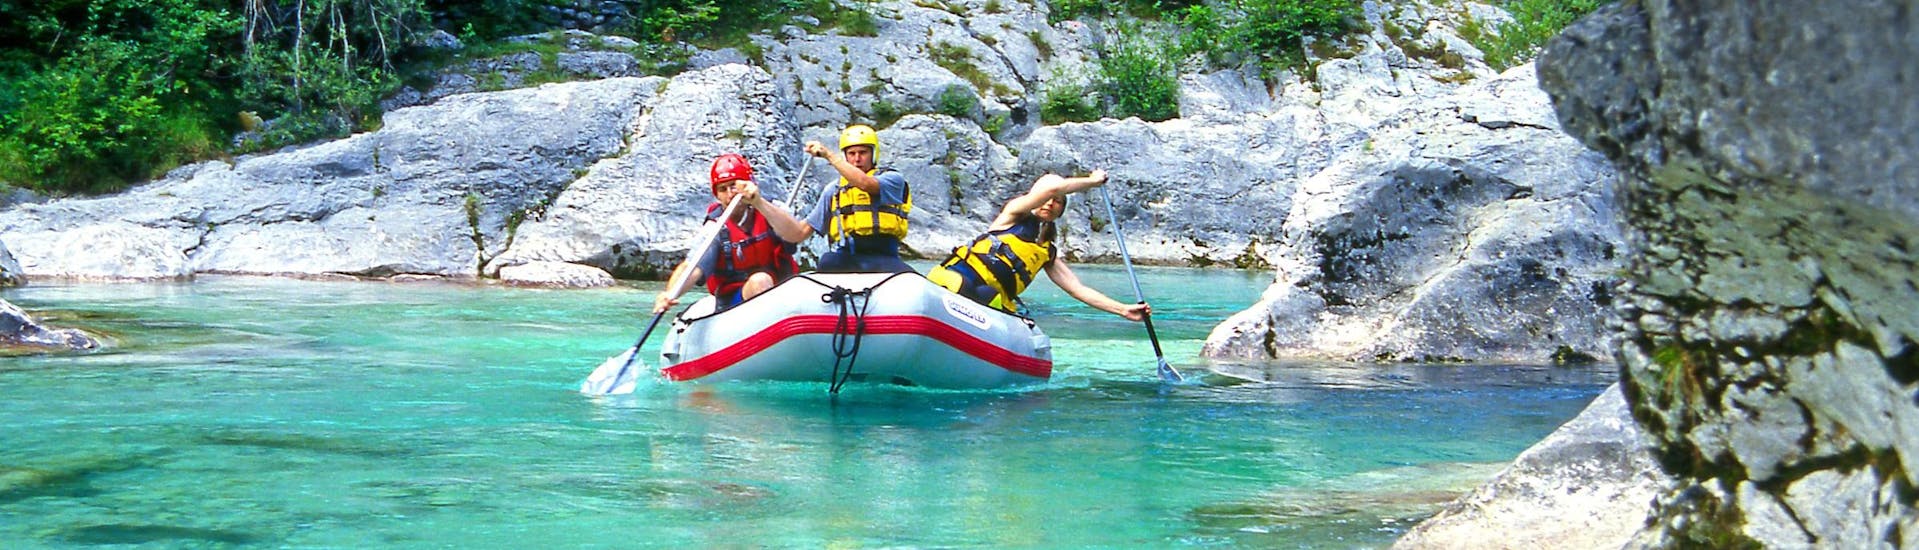 Un groupe d'amis pagaye dans un raft lors d'une activité de rafting dans la destination réputée pour le rafting Kobarid.